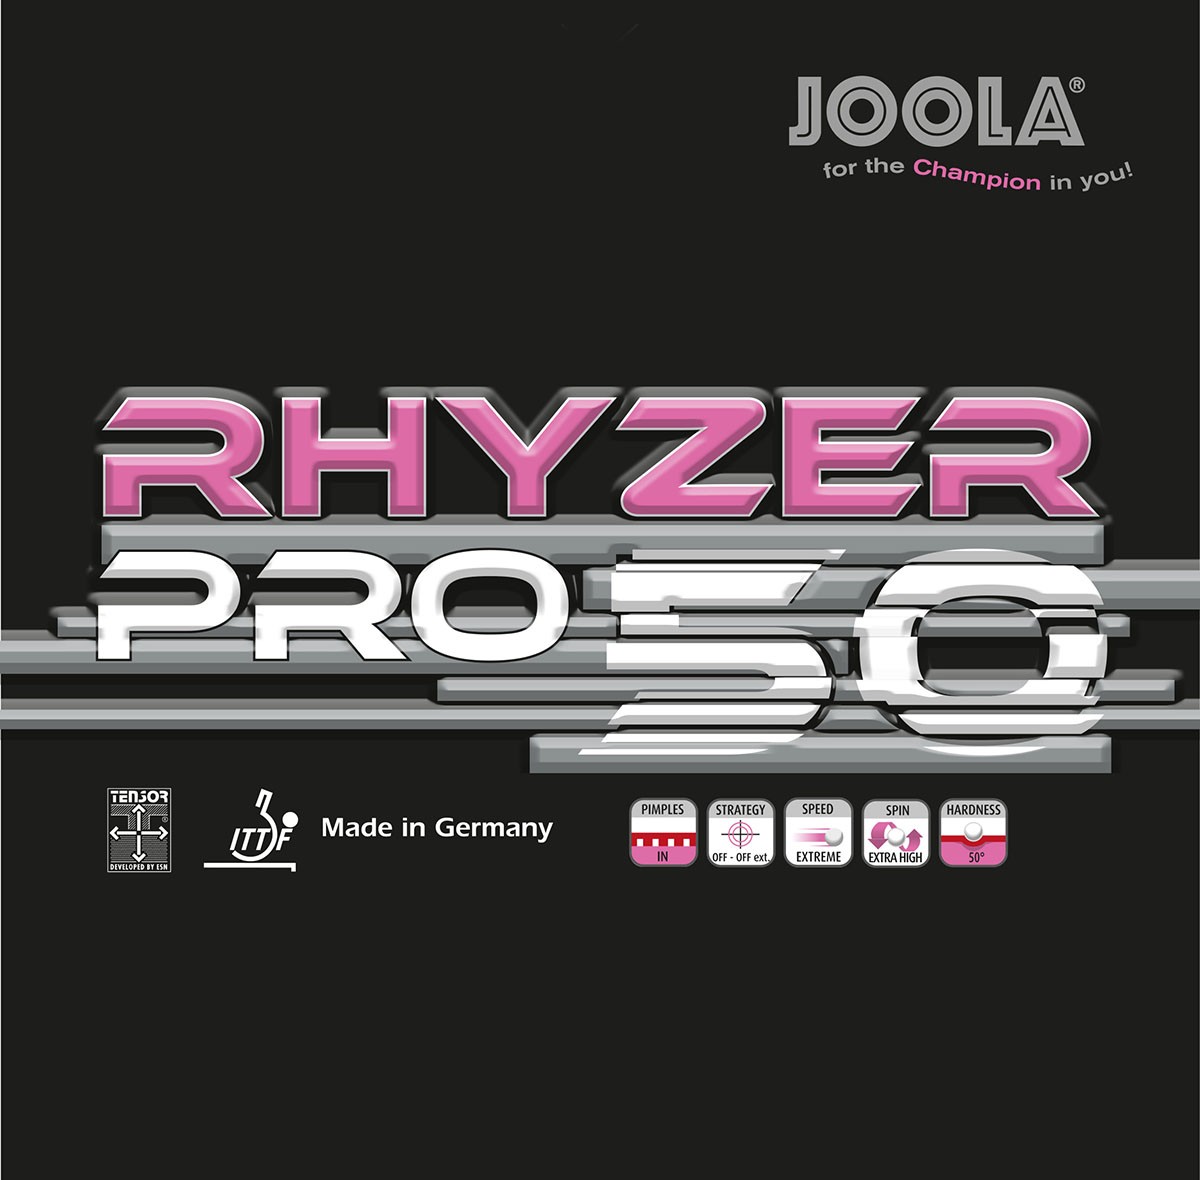 49,90€* Joola Rhyzer Pro 45 NEU *UVP 